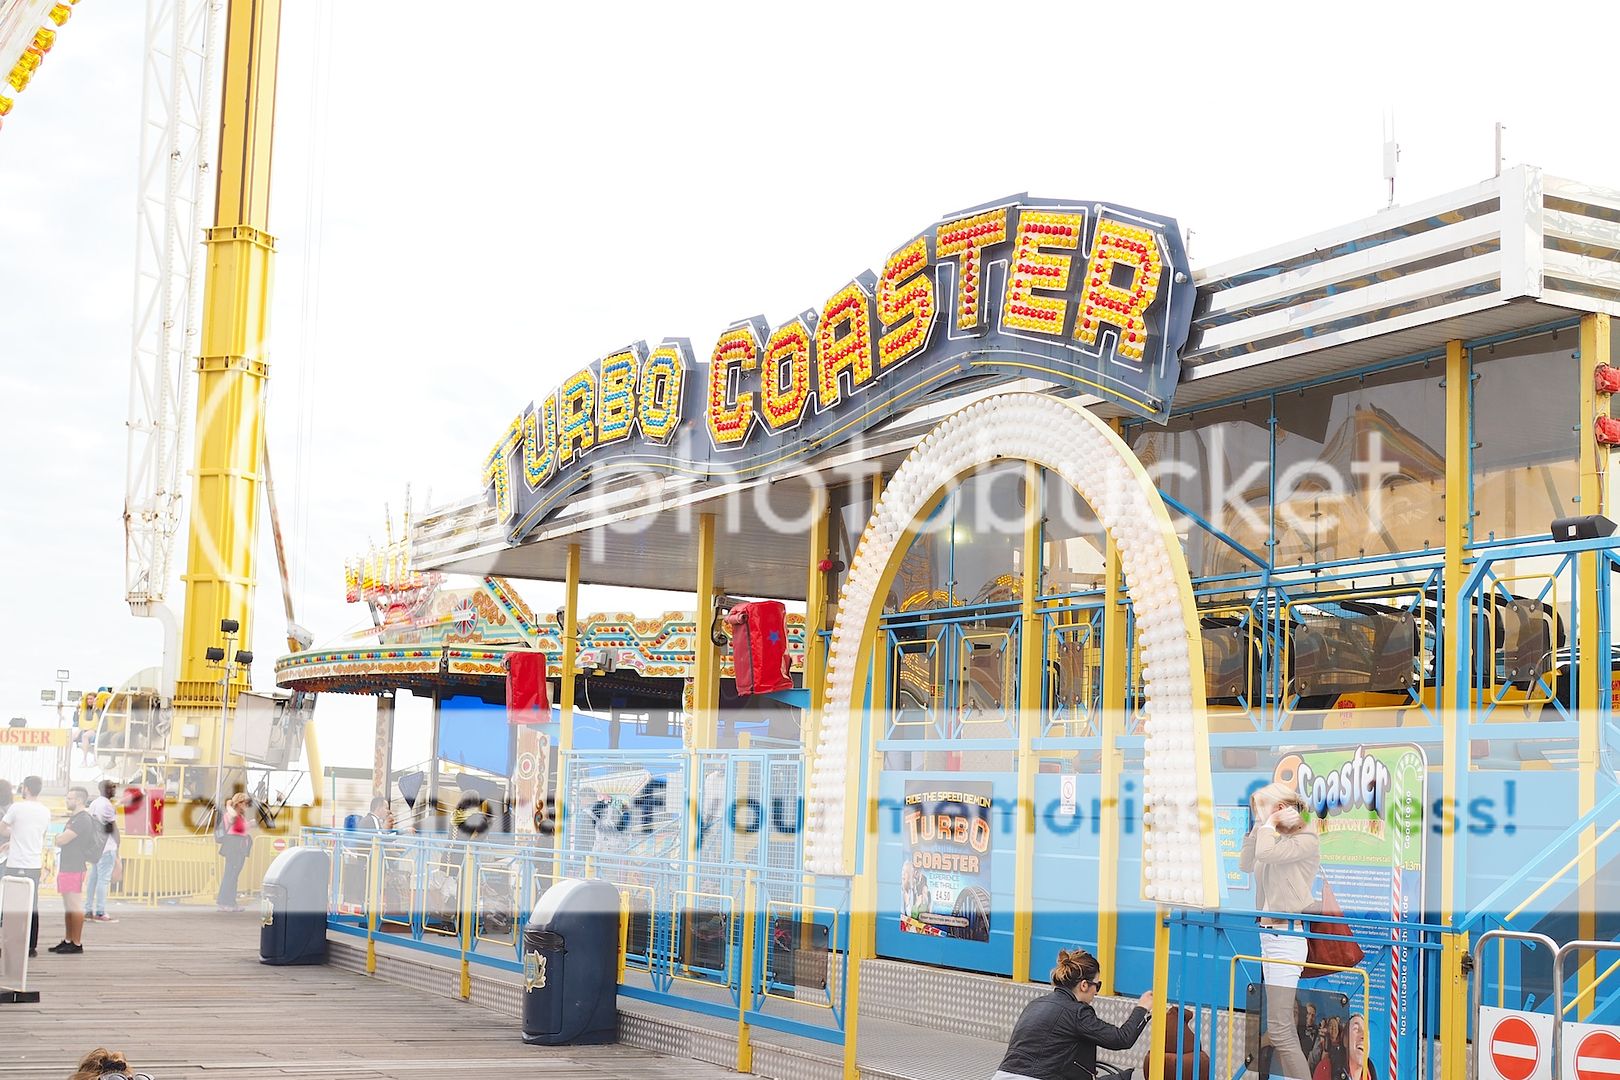  photo turbo coaster brighton pier coast beach.jpg